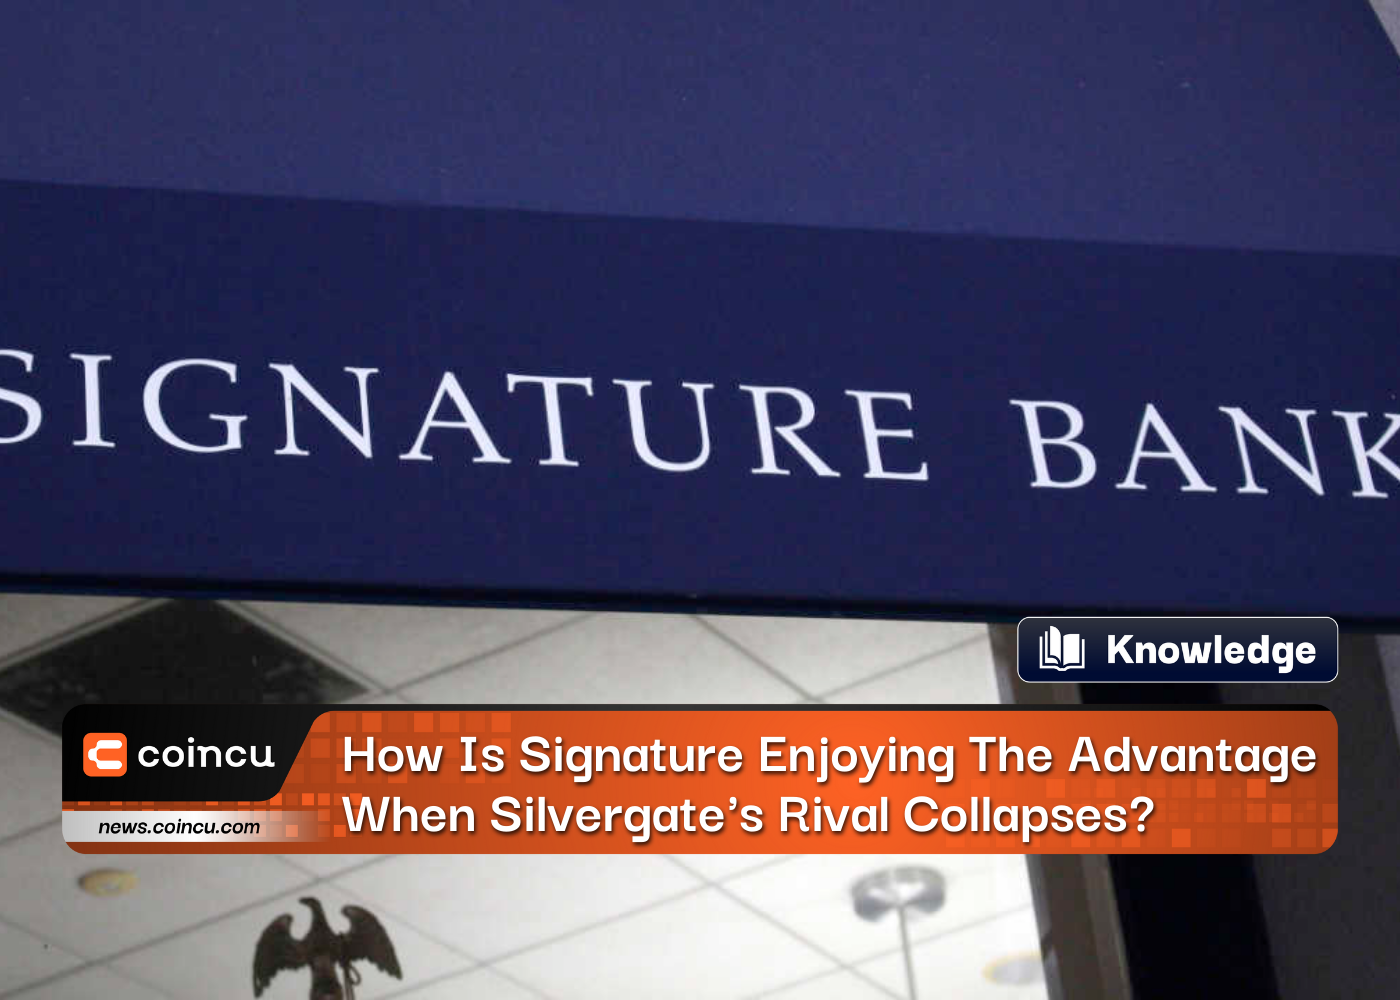 Ngân hàng Signature tận dụng lợi thế như thế nào khi đối thủ của Silvergate sụp đổ?